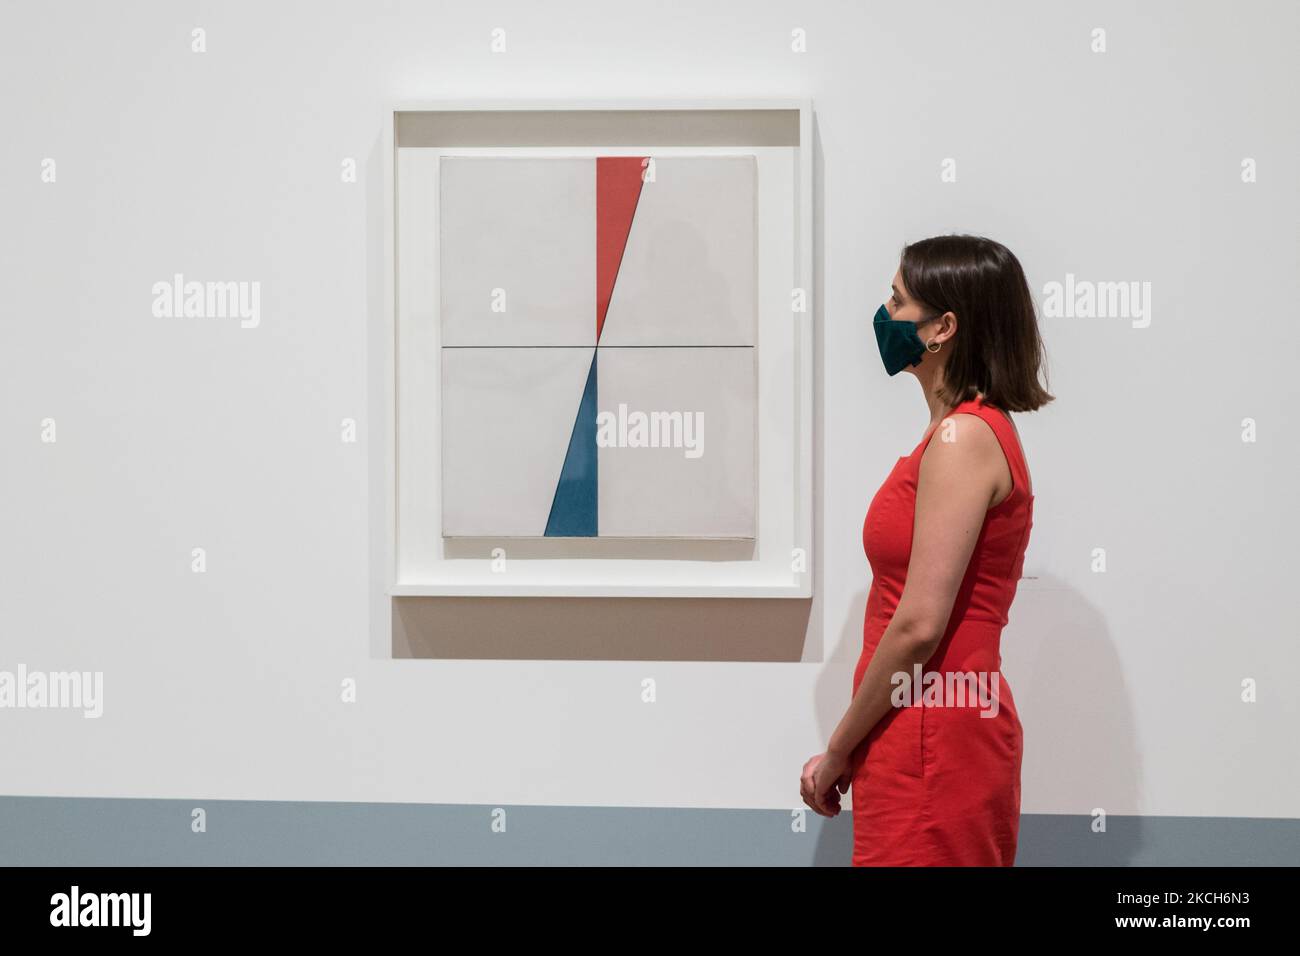 LONDRA, REGNO UNITO - 13 LUGLIO 2021: Uno staff della galleria guarda 'Two Triangles' (1931) di Sophie Taeuber-Arp durante una fotocall per promuovere la nuova mostra a Tate Modern il 13 luglio 2021 a Londra, Inghilterra. La mostra (15 luglio – 17 ottobre 2021) sarà la prima nel Regno Unito a presentare le opere di Sophie Taeuber-Arp (1889-1943), uno degli artisti e designer più innovativi dell'avanguardia del 20th° secolo, tracciando la sua carriera compiuta come pittore, architetto, insegnante, scrittore, e designer di tessuti, marionette e interni. (Foto di Wiktor Szymanowicz/NurPhoto) Foto Stock